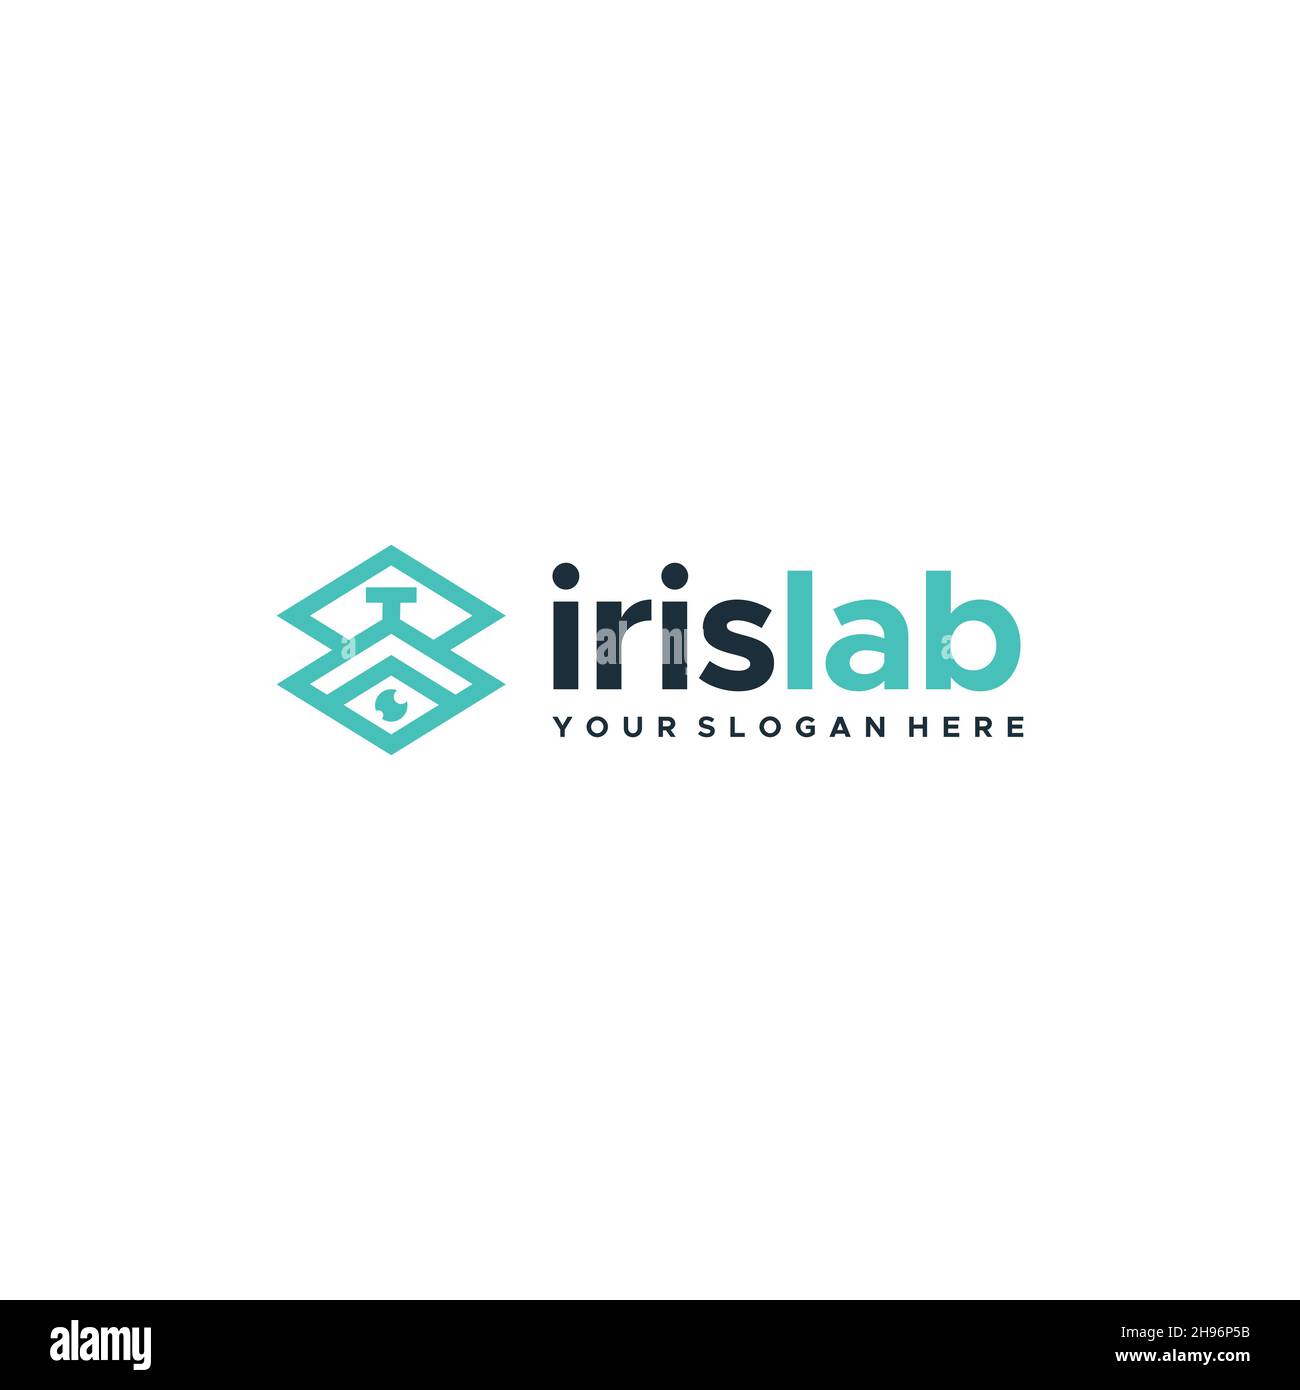 Share more than 125 iris logo best